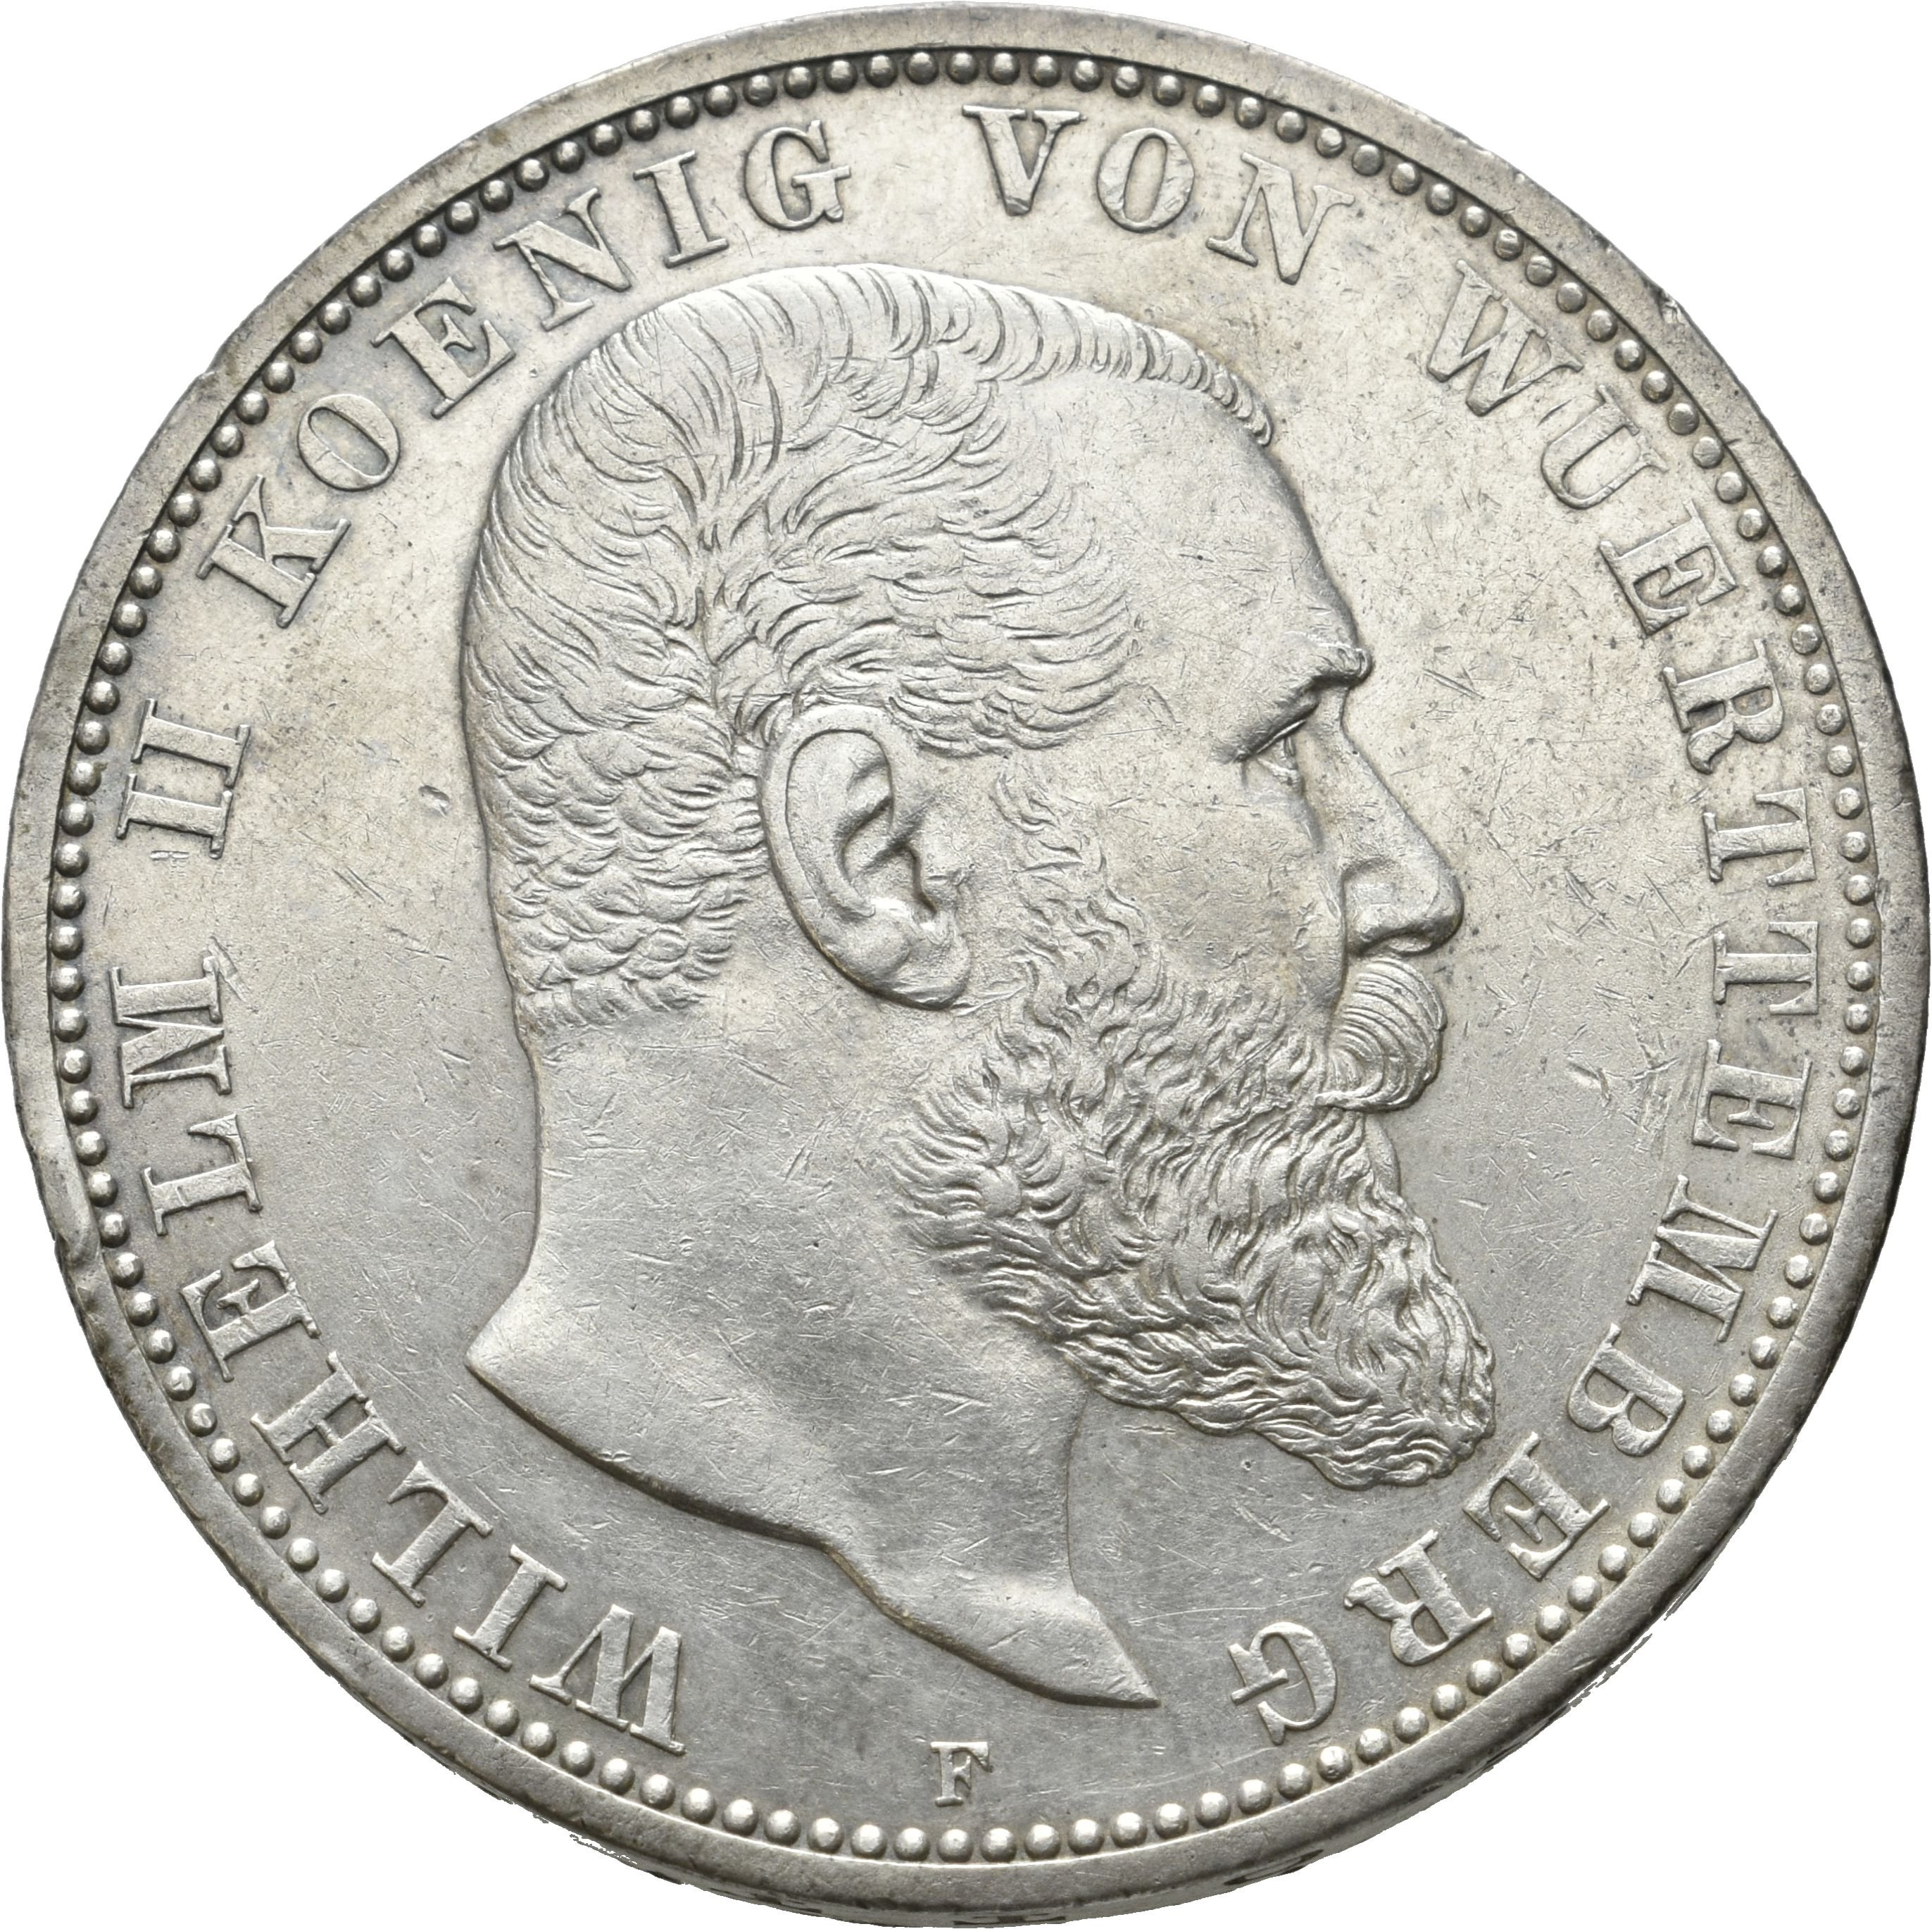 5 Mark von König Wilhelm II. von Württemberg von 1907 (Münzsammlung des Sparkassenverbands Baden-Württemberg CC BY-NC-SA)